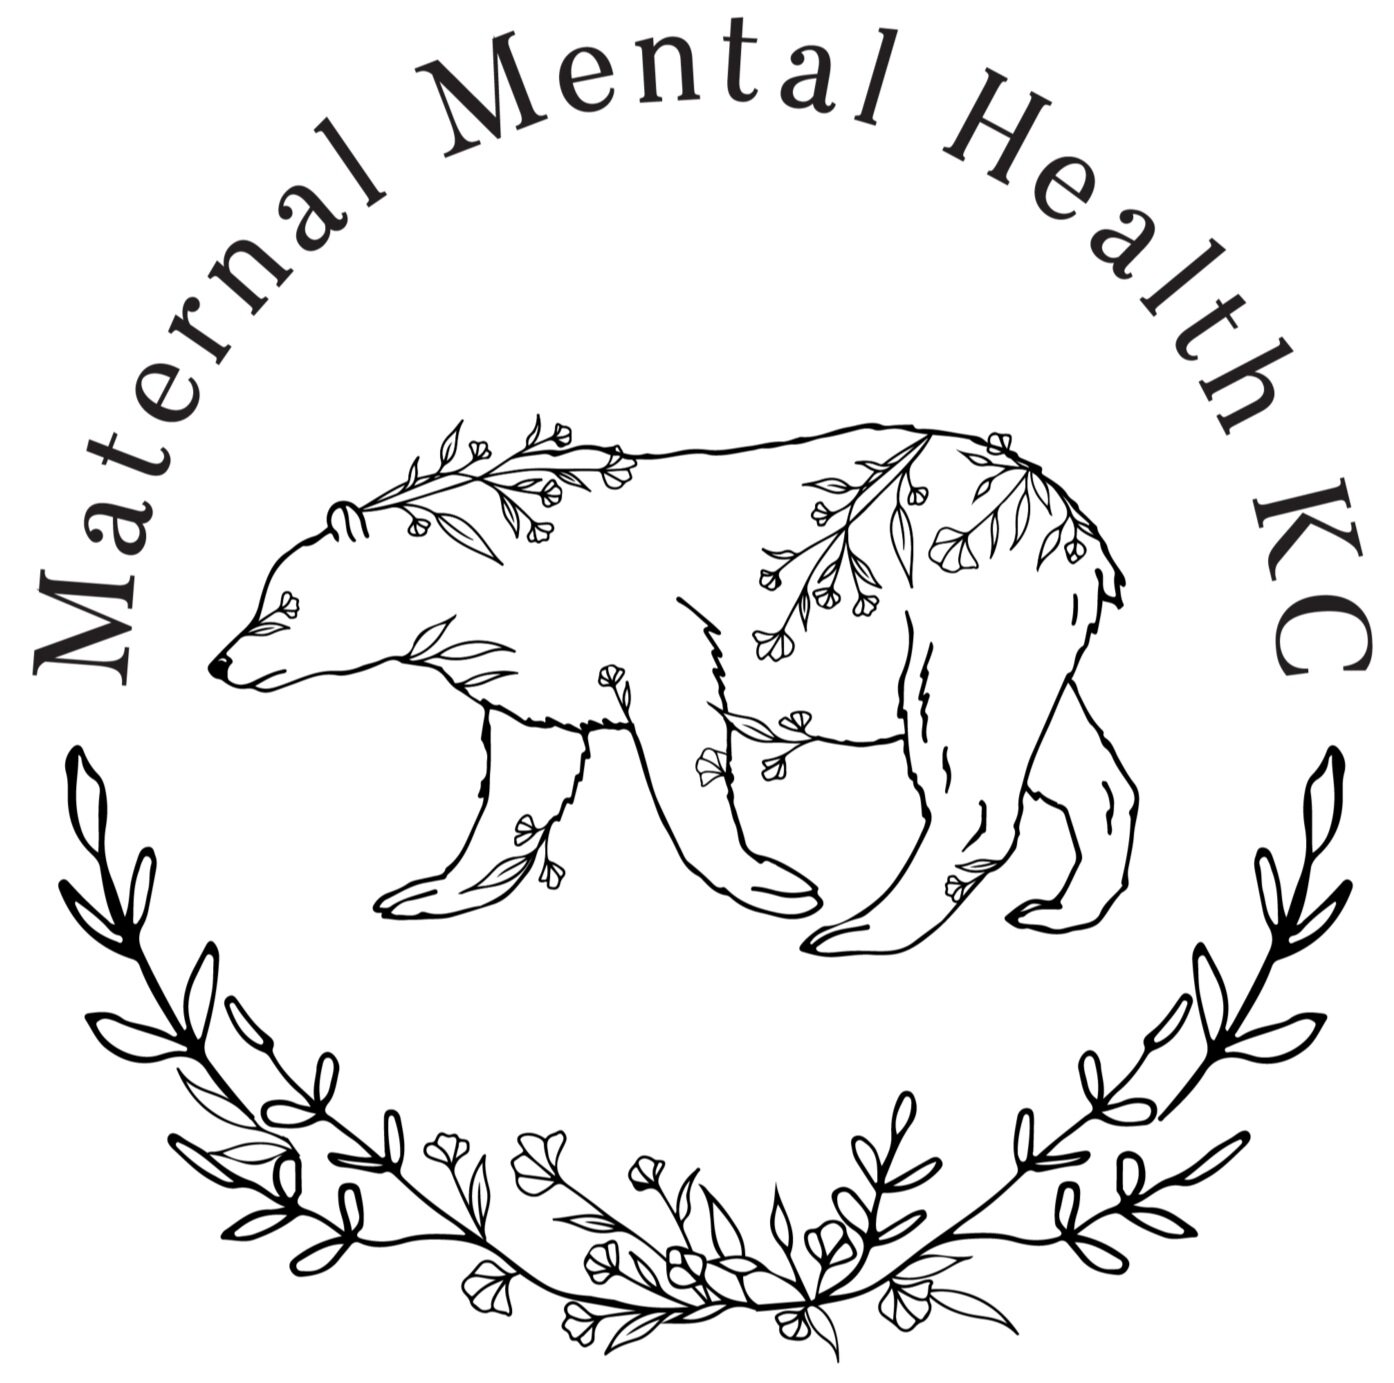 Maternal Mental Health KC